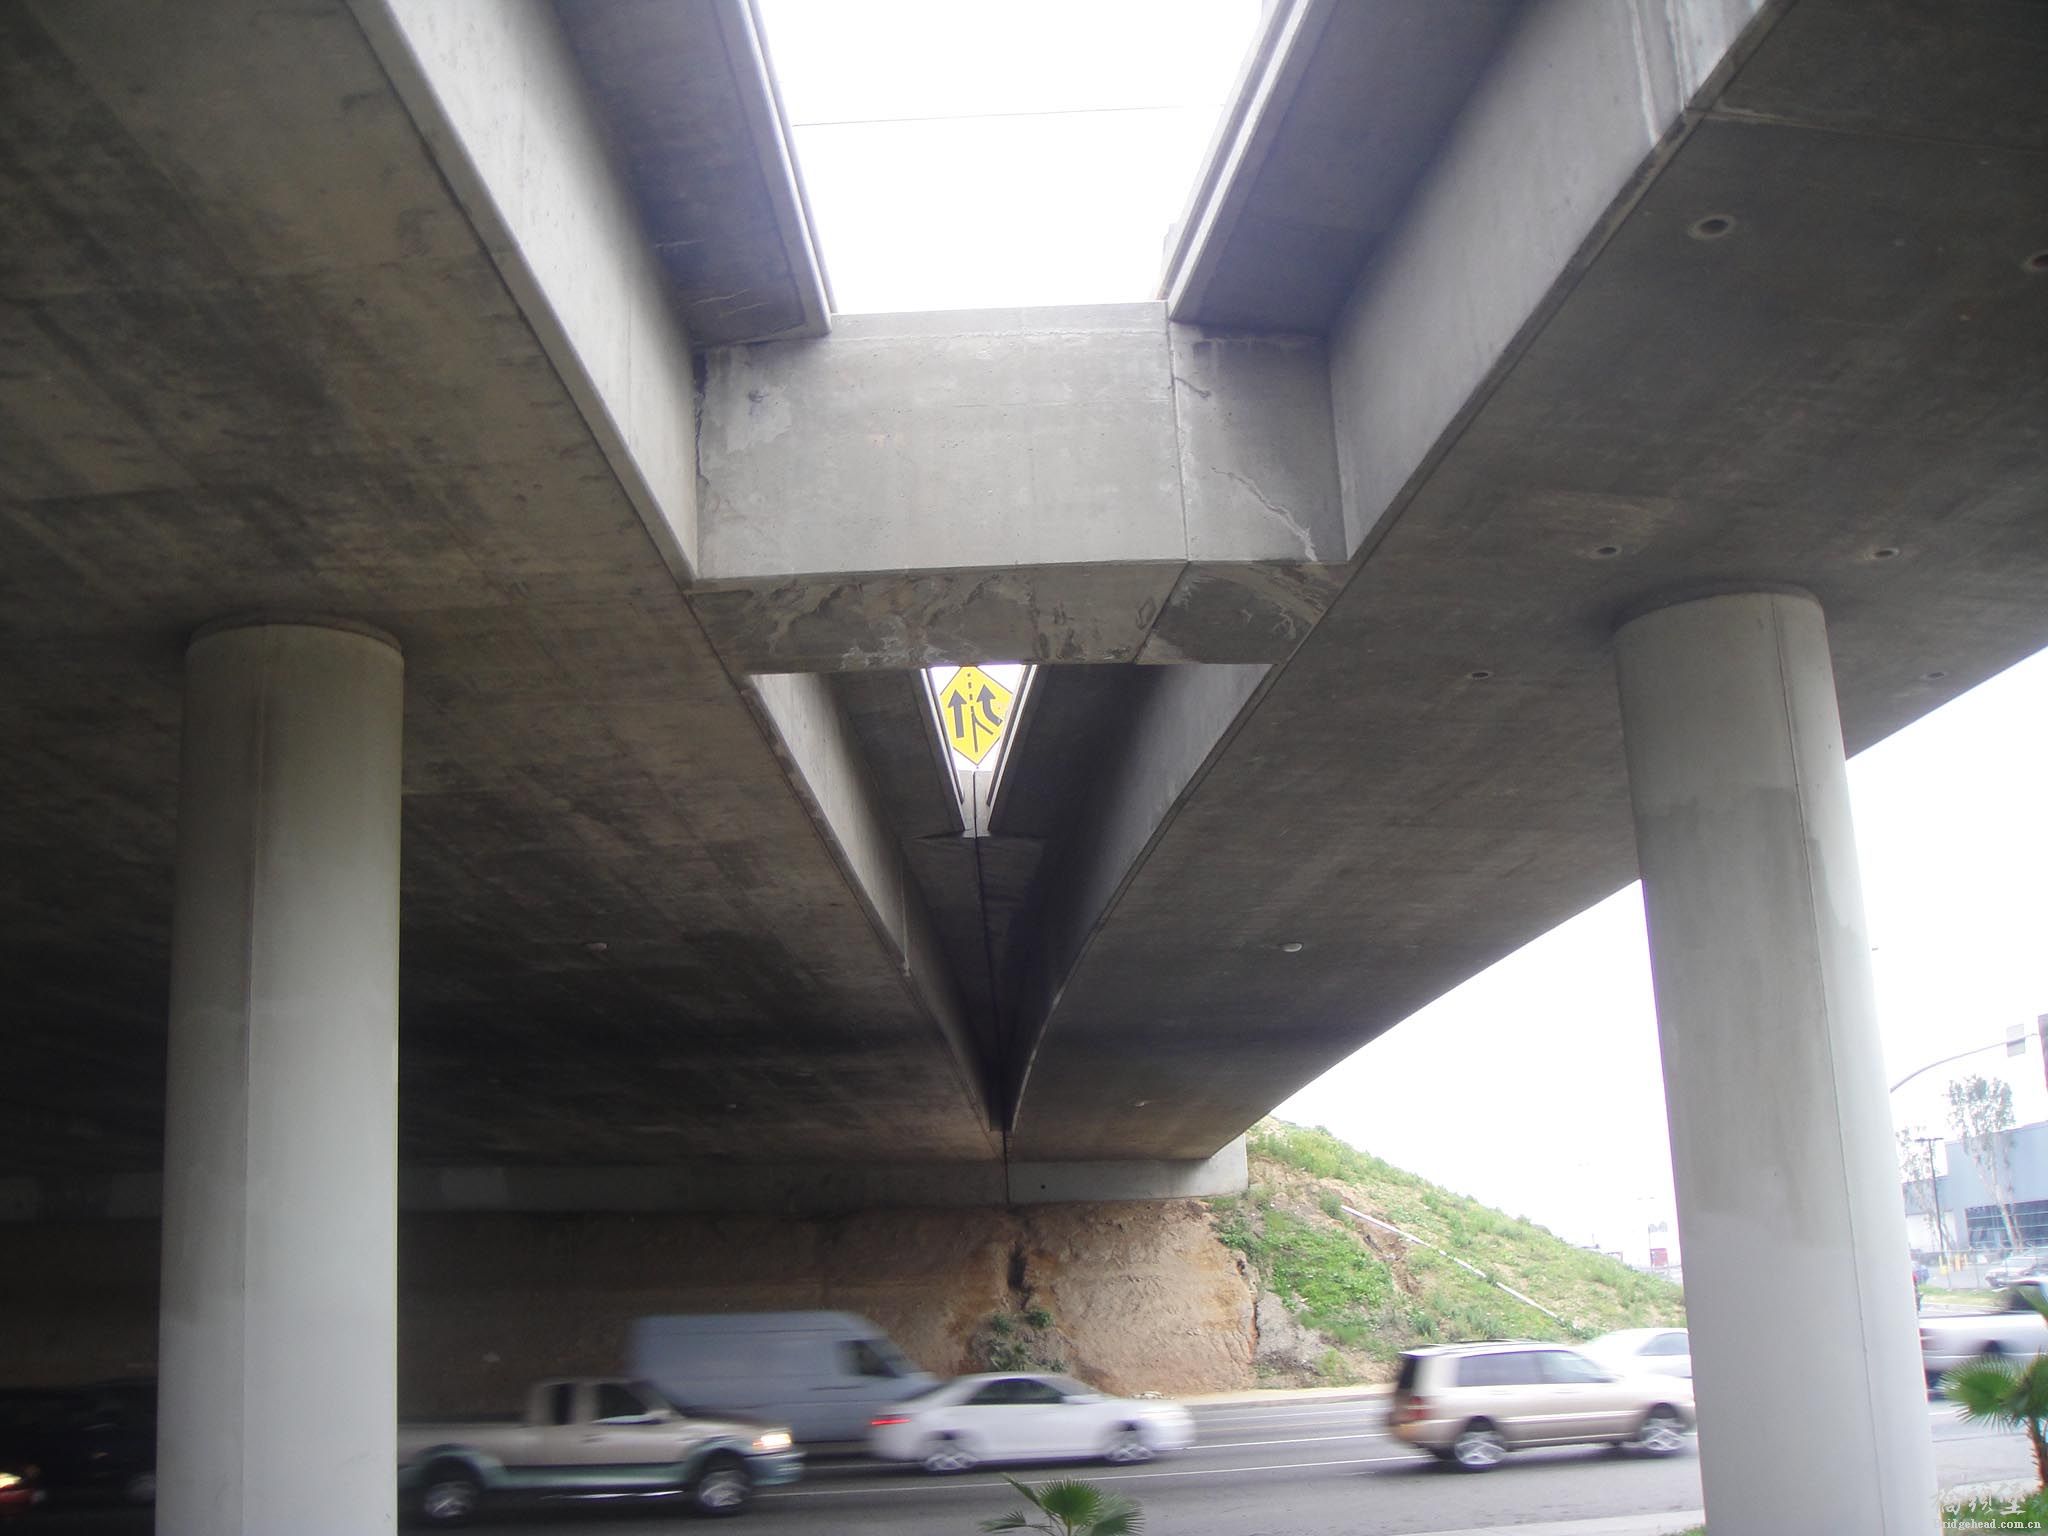 洛杉矶91号高速公路匝道桥桥台正面0.jpg